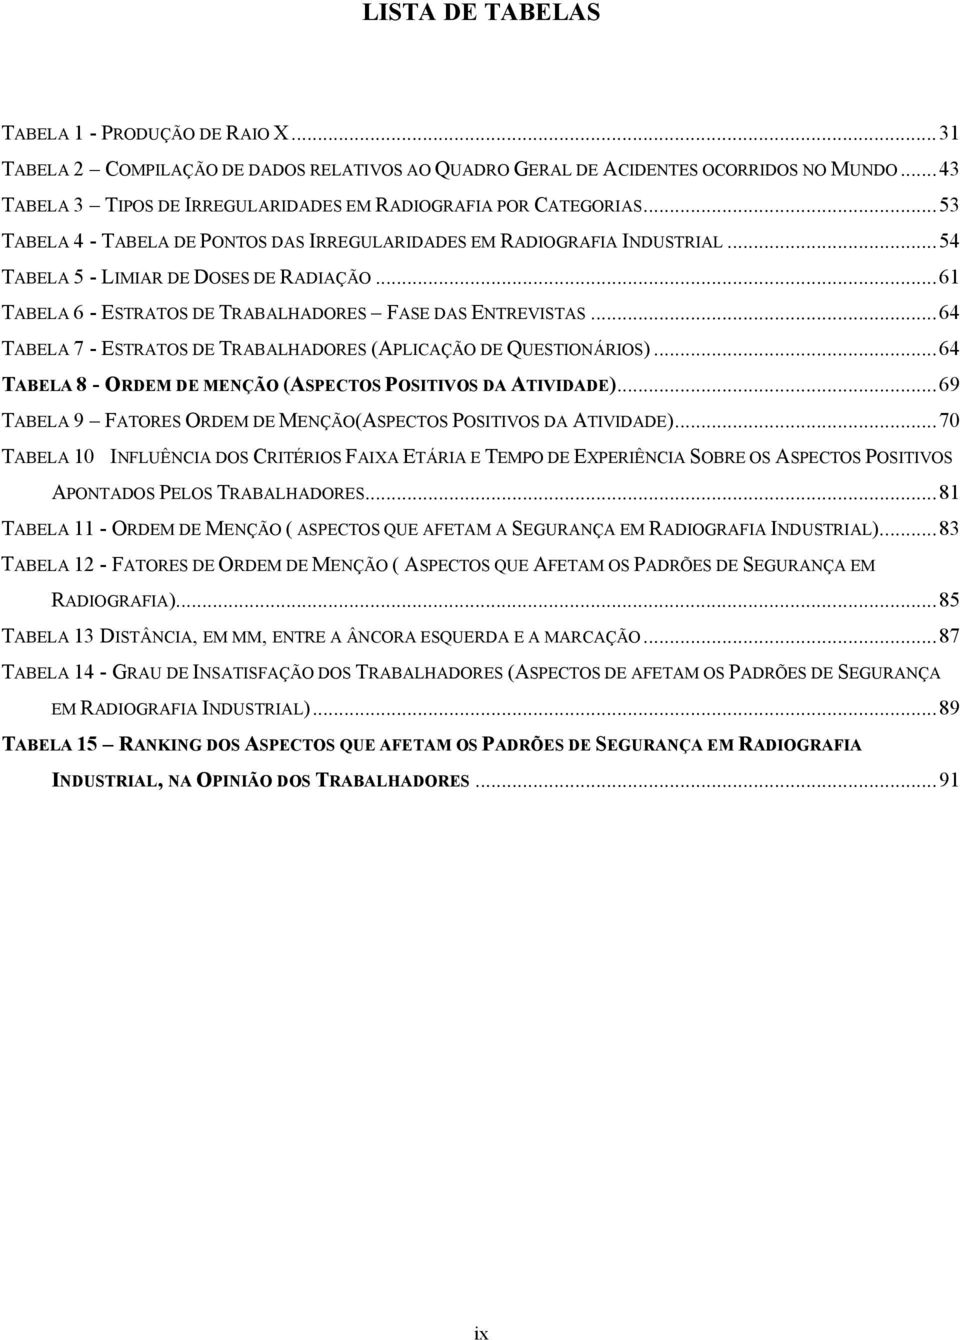 ..61 TABELA 6 - ESTRATOS DE TRABALHADORES FASE DAS ENTREVISTAS...64 TABELA 7 - ESTRATOS DE TRABALHADORES (APLICAÇÃO DE QUESTIONÁRIOS)...64 TABELA 8 - ORDEM DE MENÇÃO (ASPECTOS POSITIVOS DA ATIVIDADE).